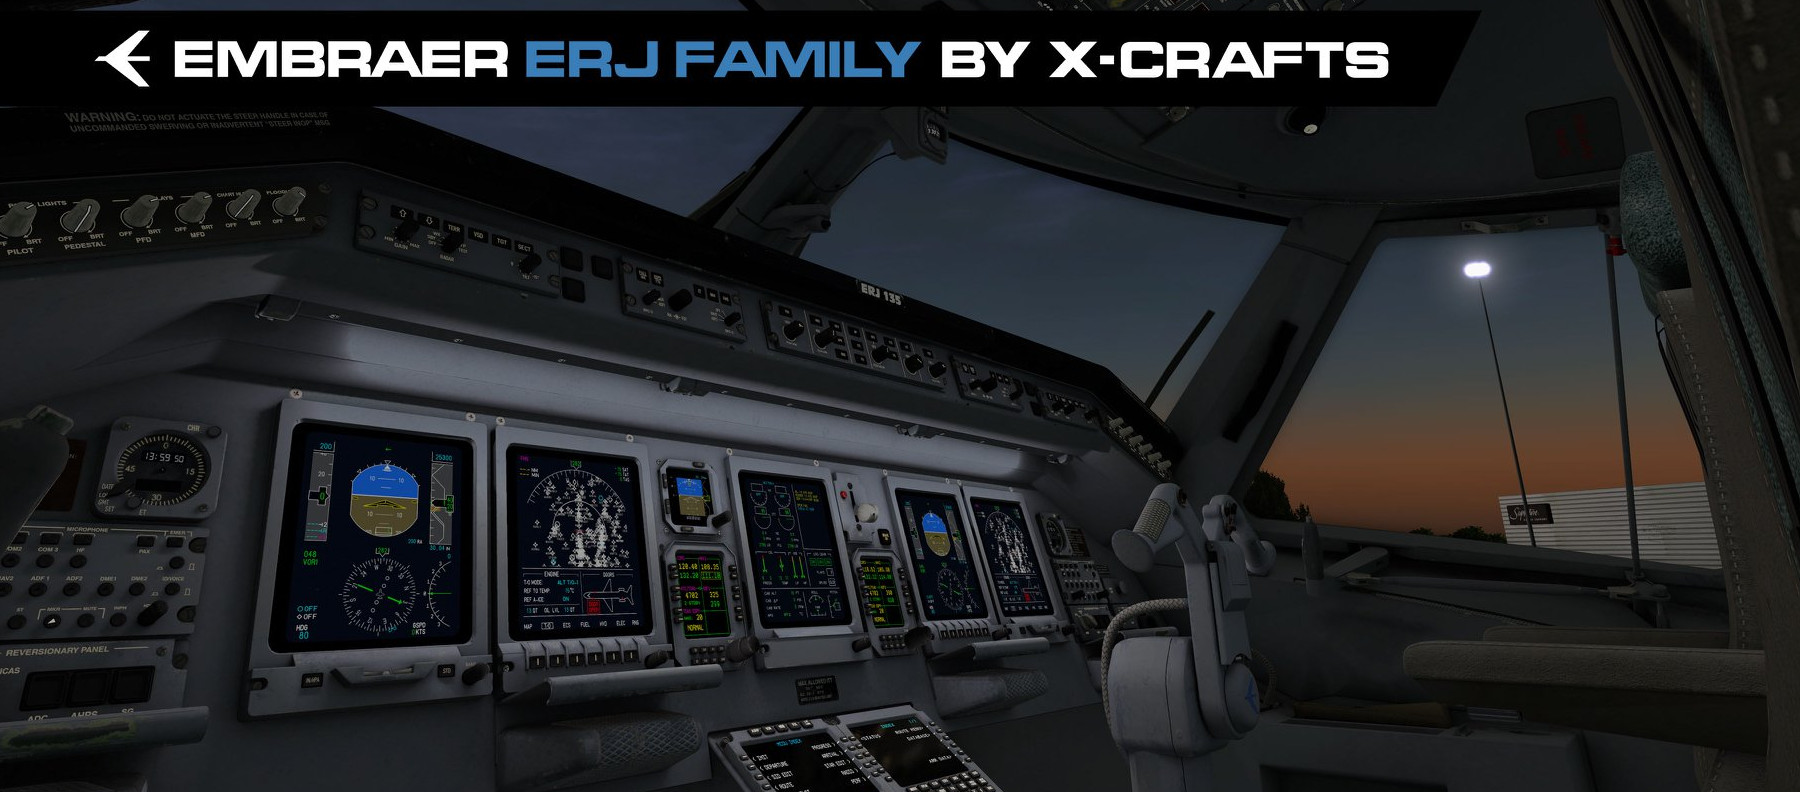 ERJ Family von X-Crafts erschienen